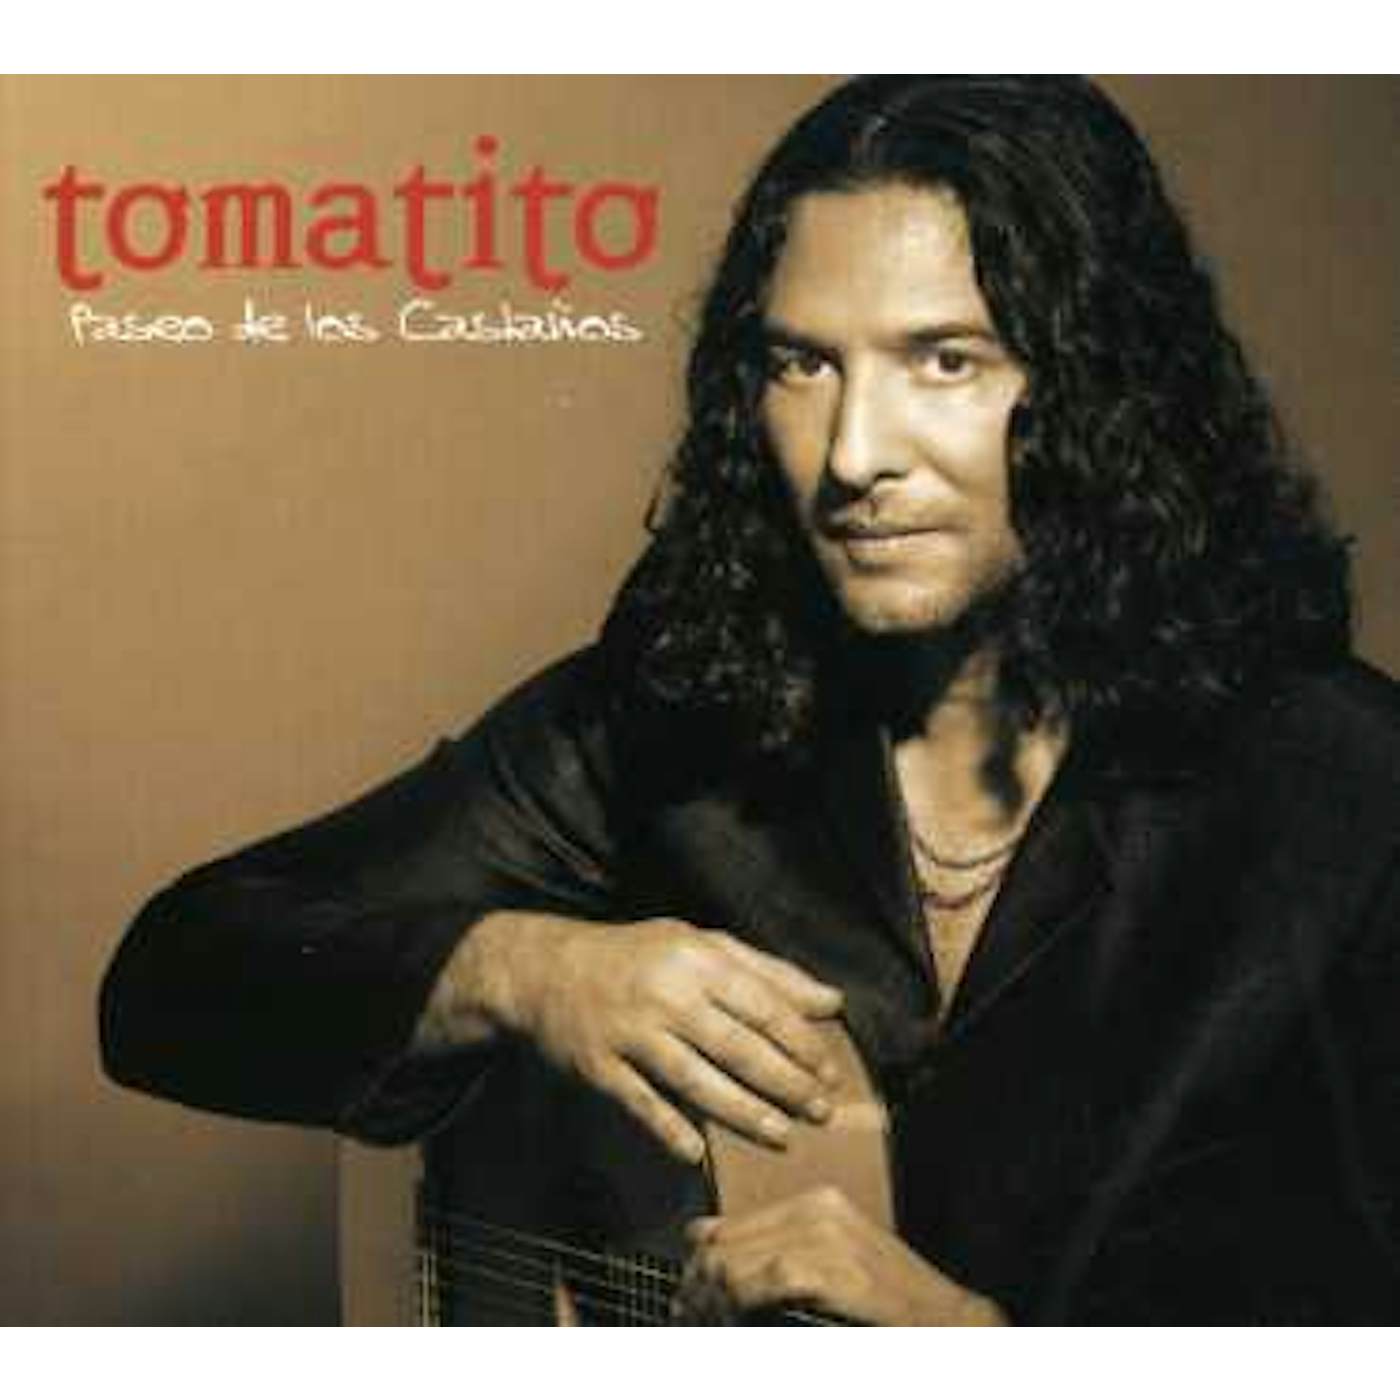 Tomatito PASEO DE LOS CASTANOS CD